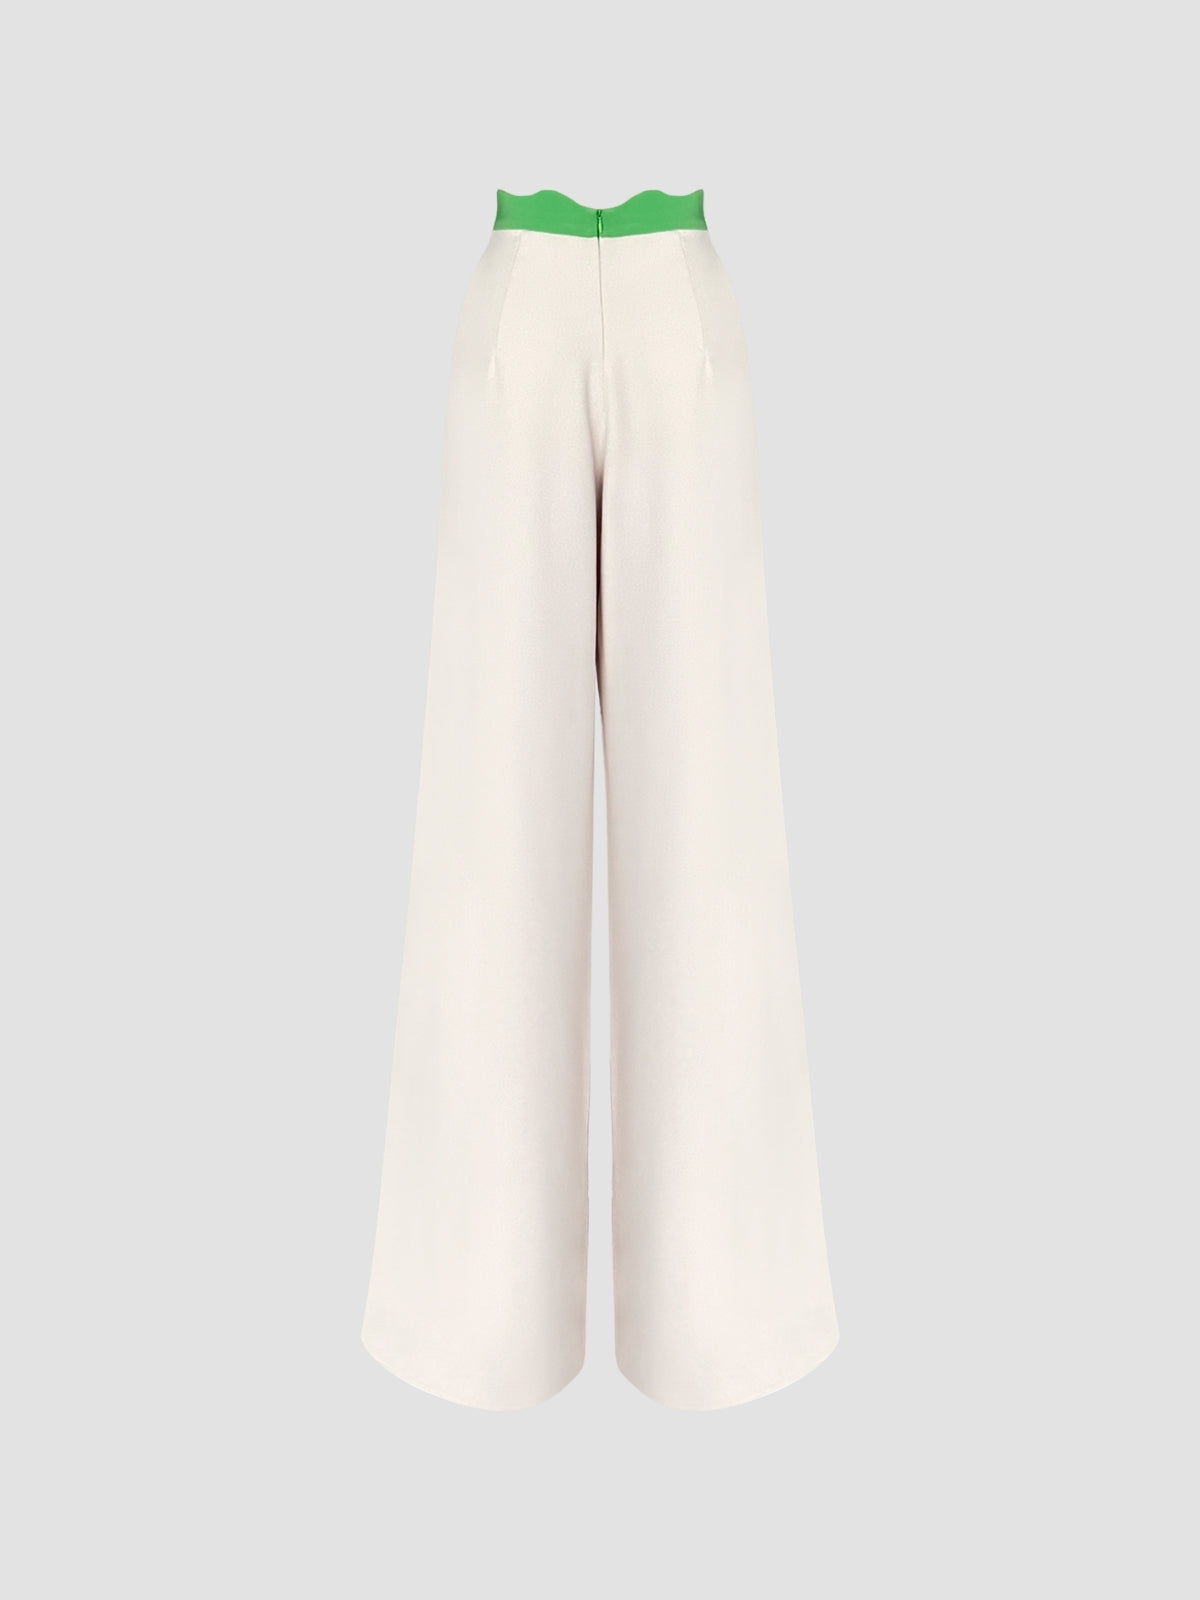 Bone white-Olivine green Rakugo pants